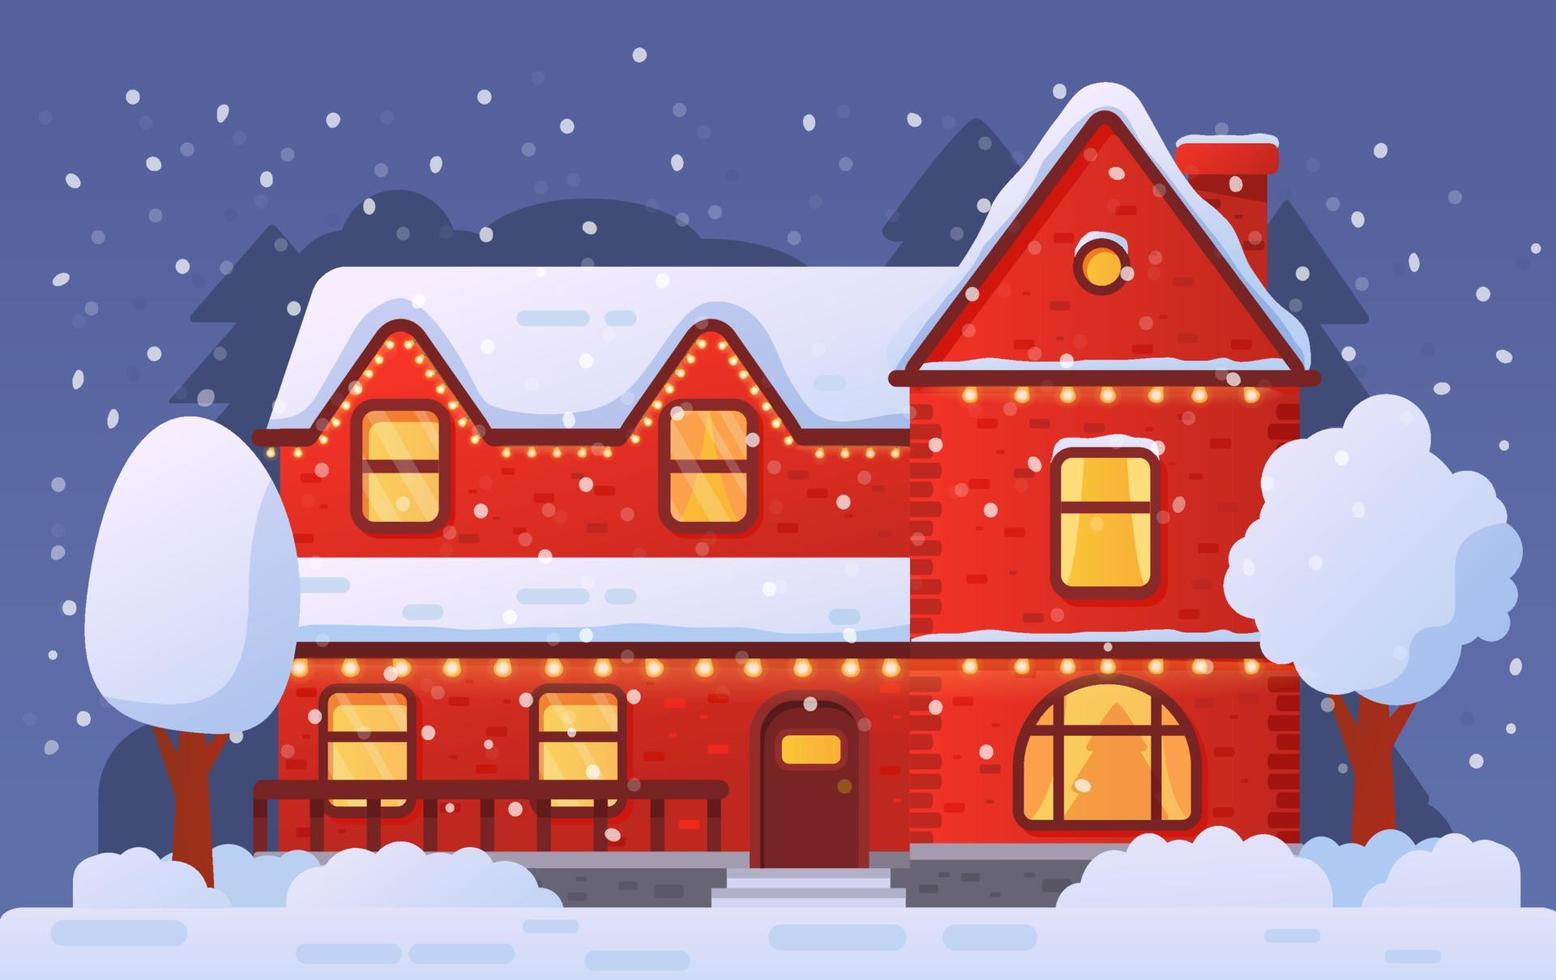 kerst huis gevel versierd garland in snowfall.flat vector illustration.suburban rode bakstenen huis.